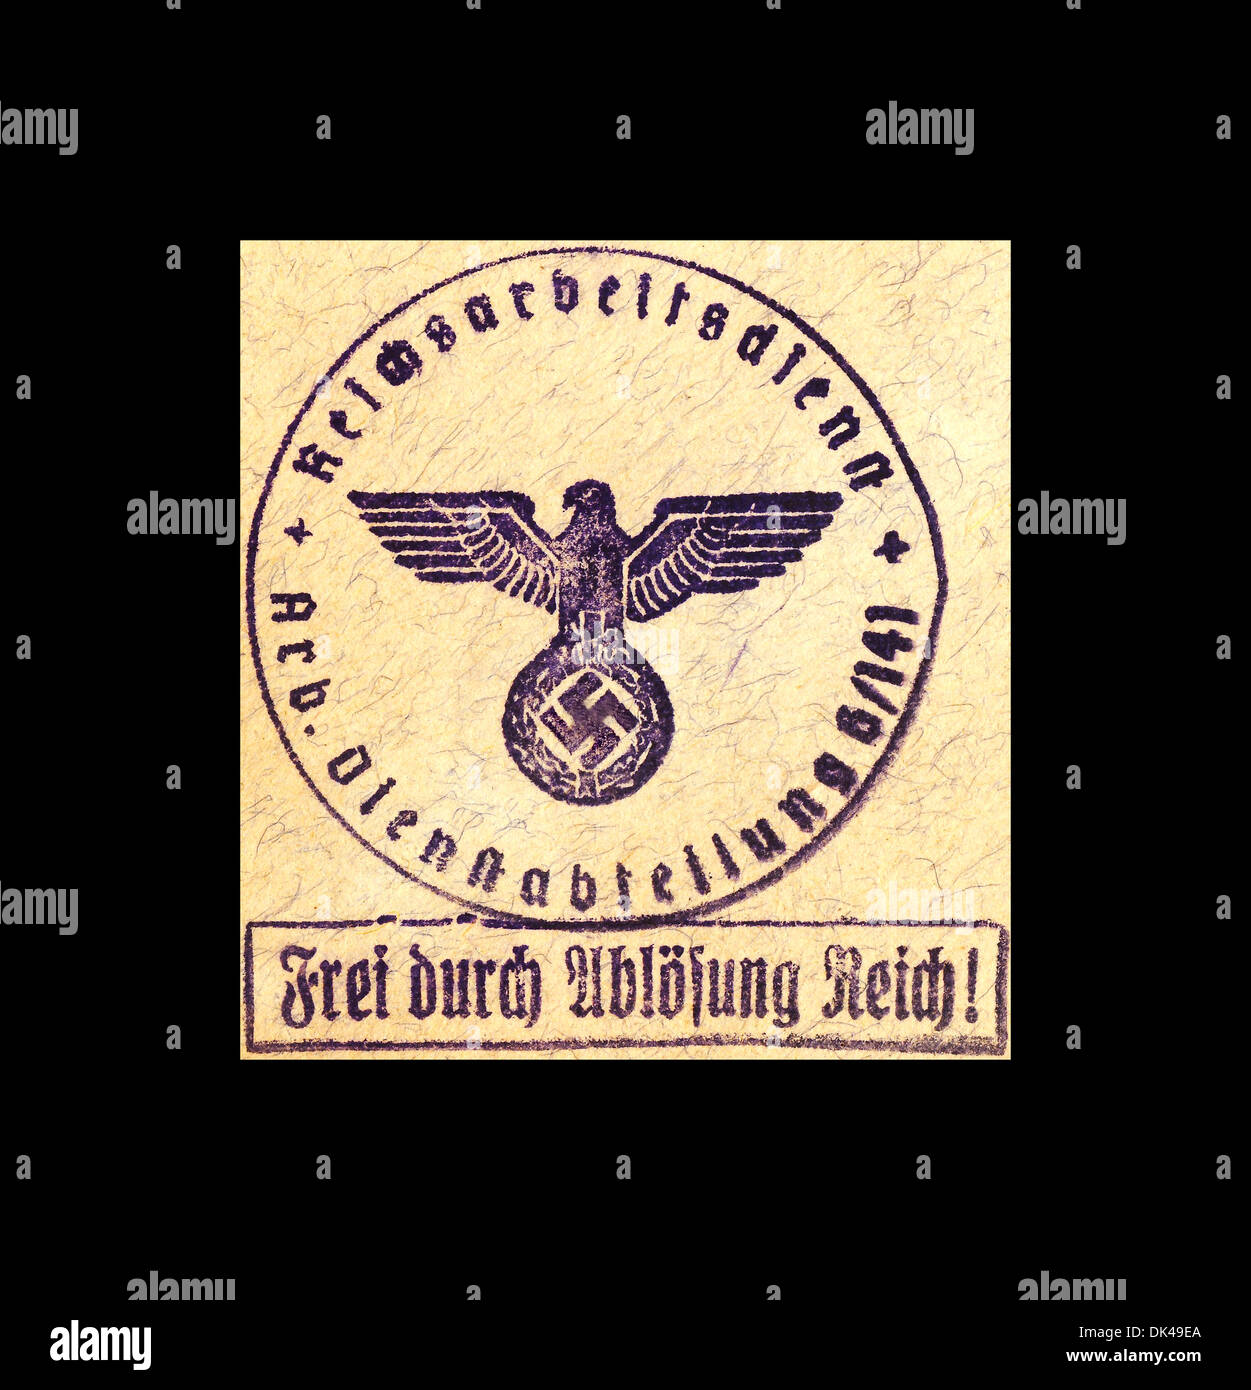 1941 WW2 i lavoratori ufficiali del partito nazista francobollo e simbolo della svastika «Frei durch ablösung Reich» «Free Through Reich Redemption» Germania seconda guerra mondiale 2F9G3 Foto Stock